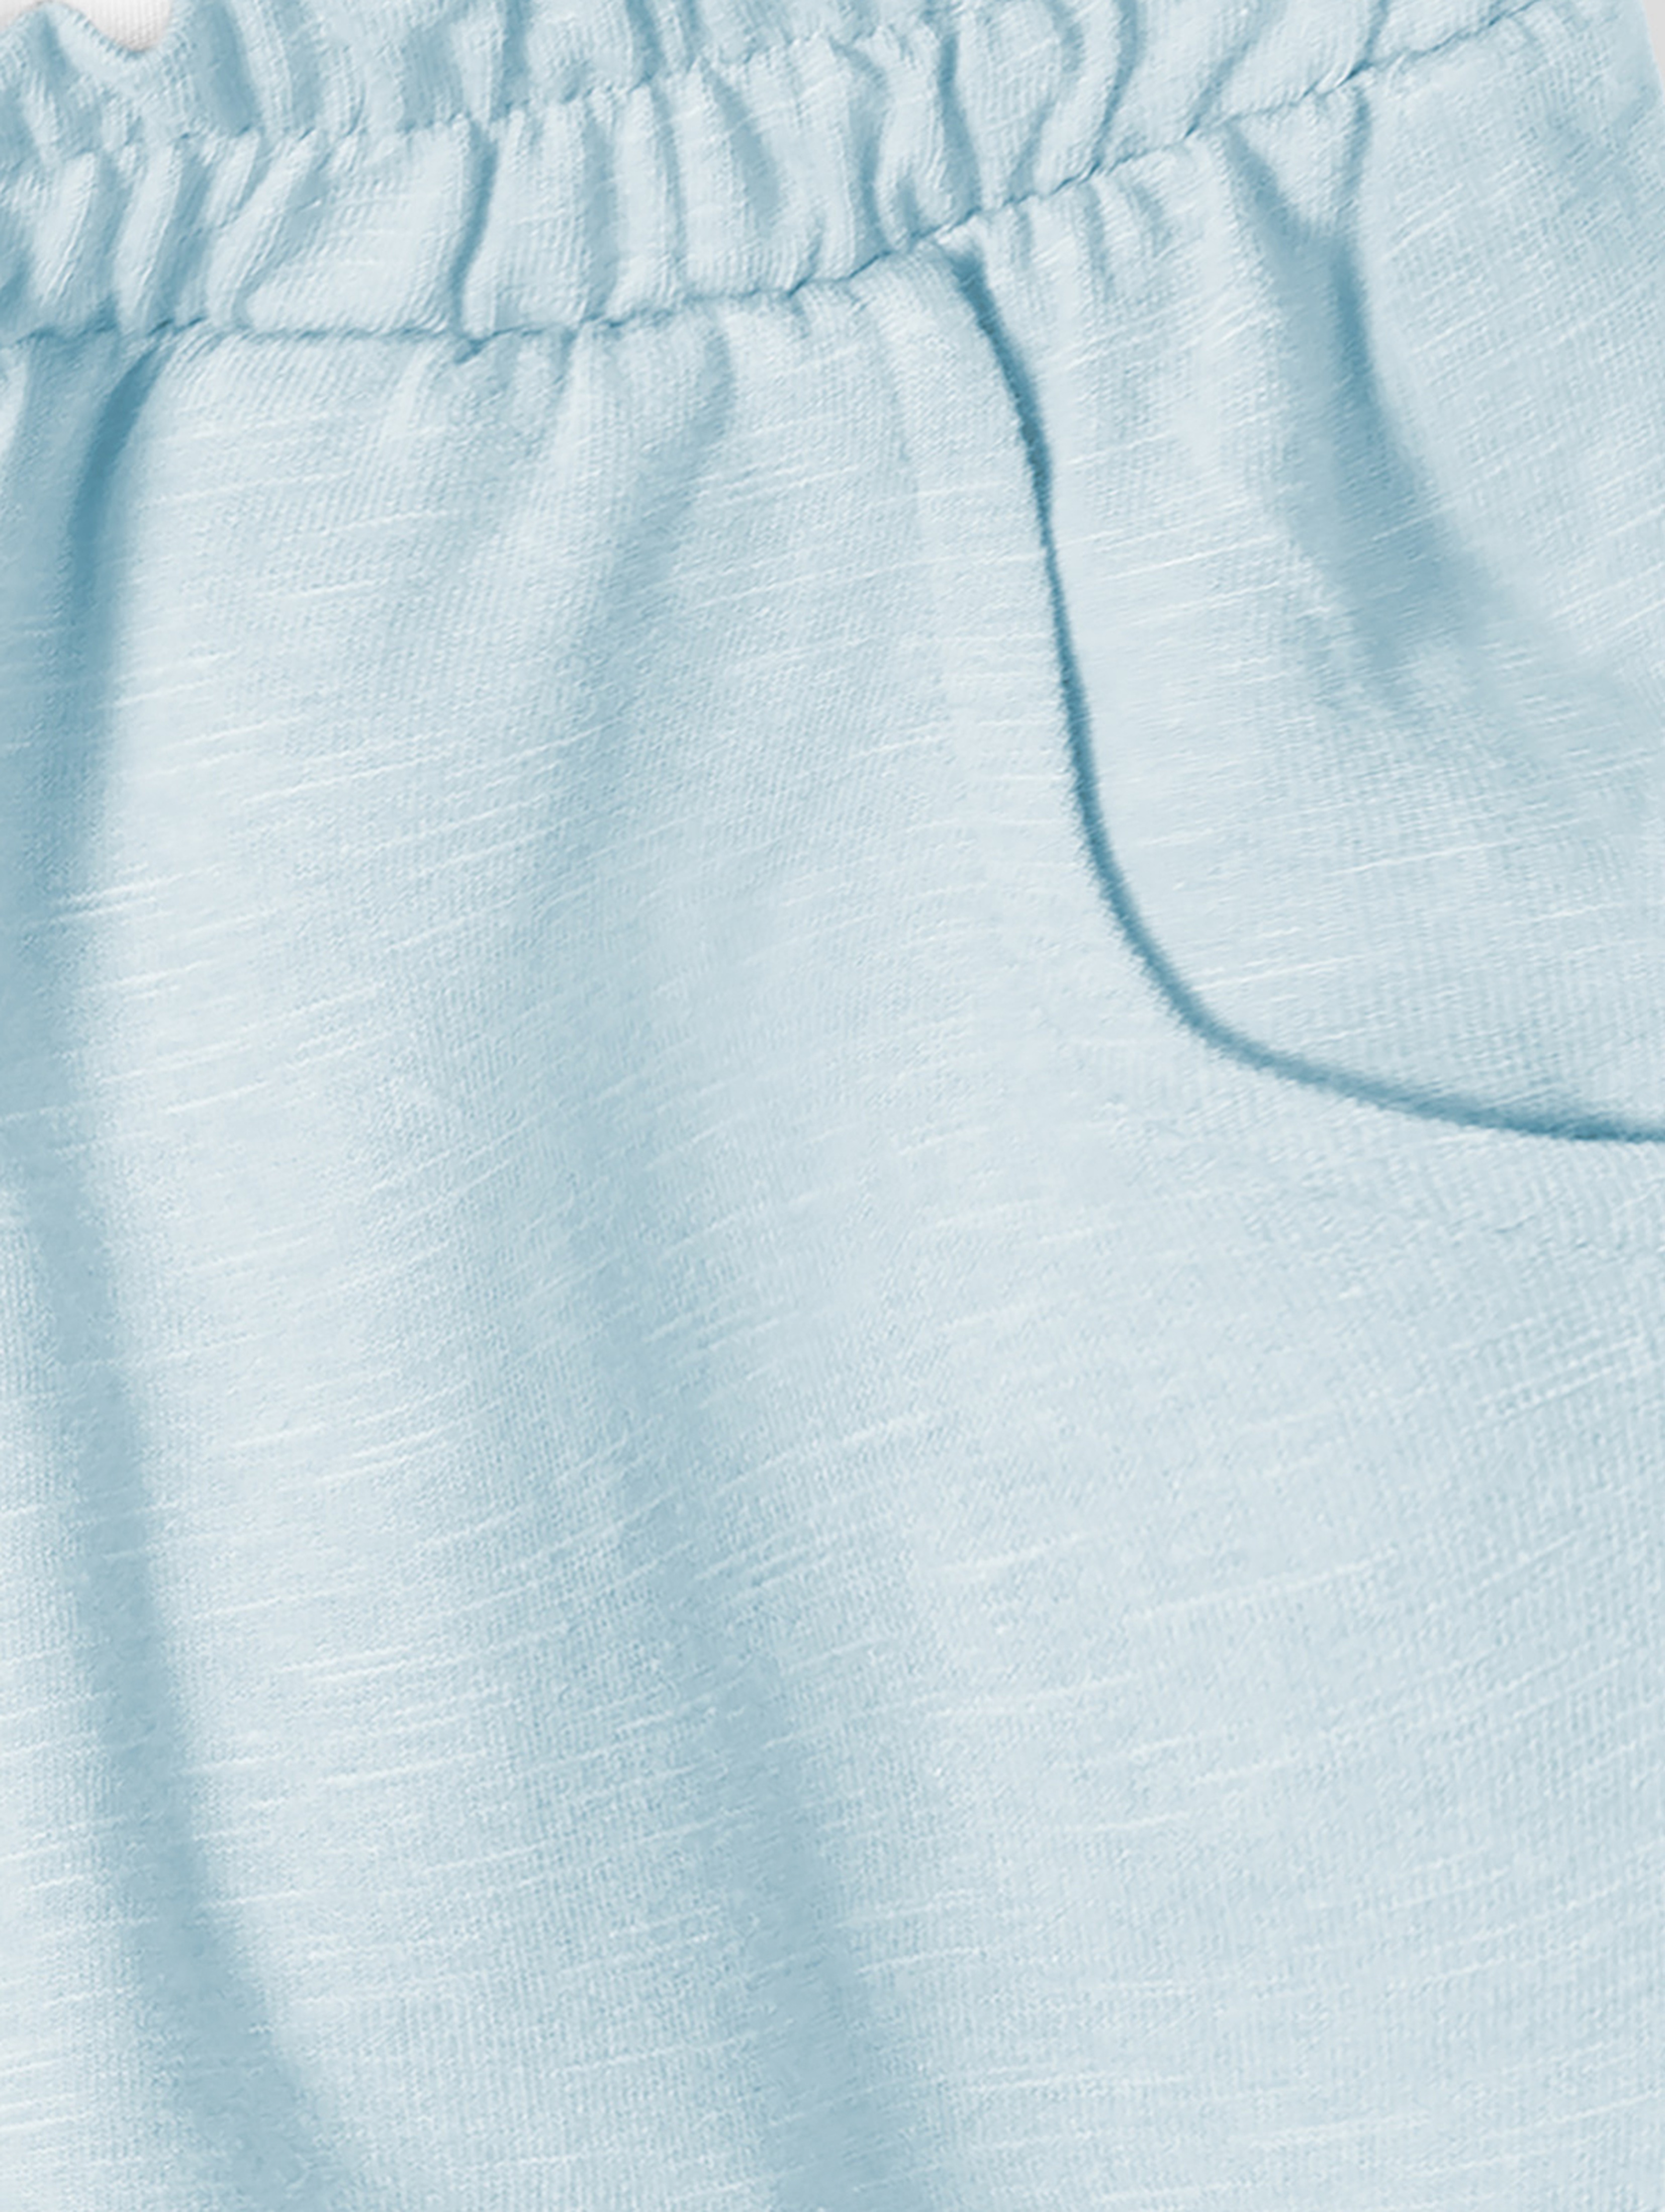 Błękitne szorty dresowe dla niemowlaka z bawełny